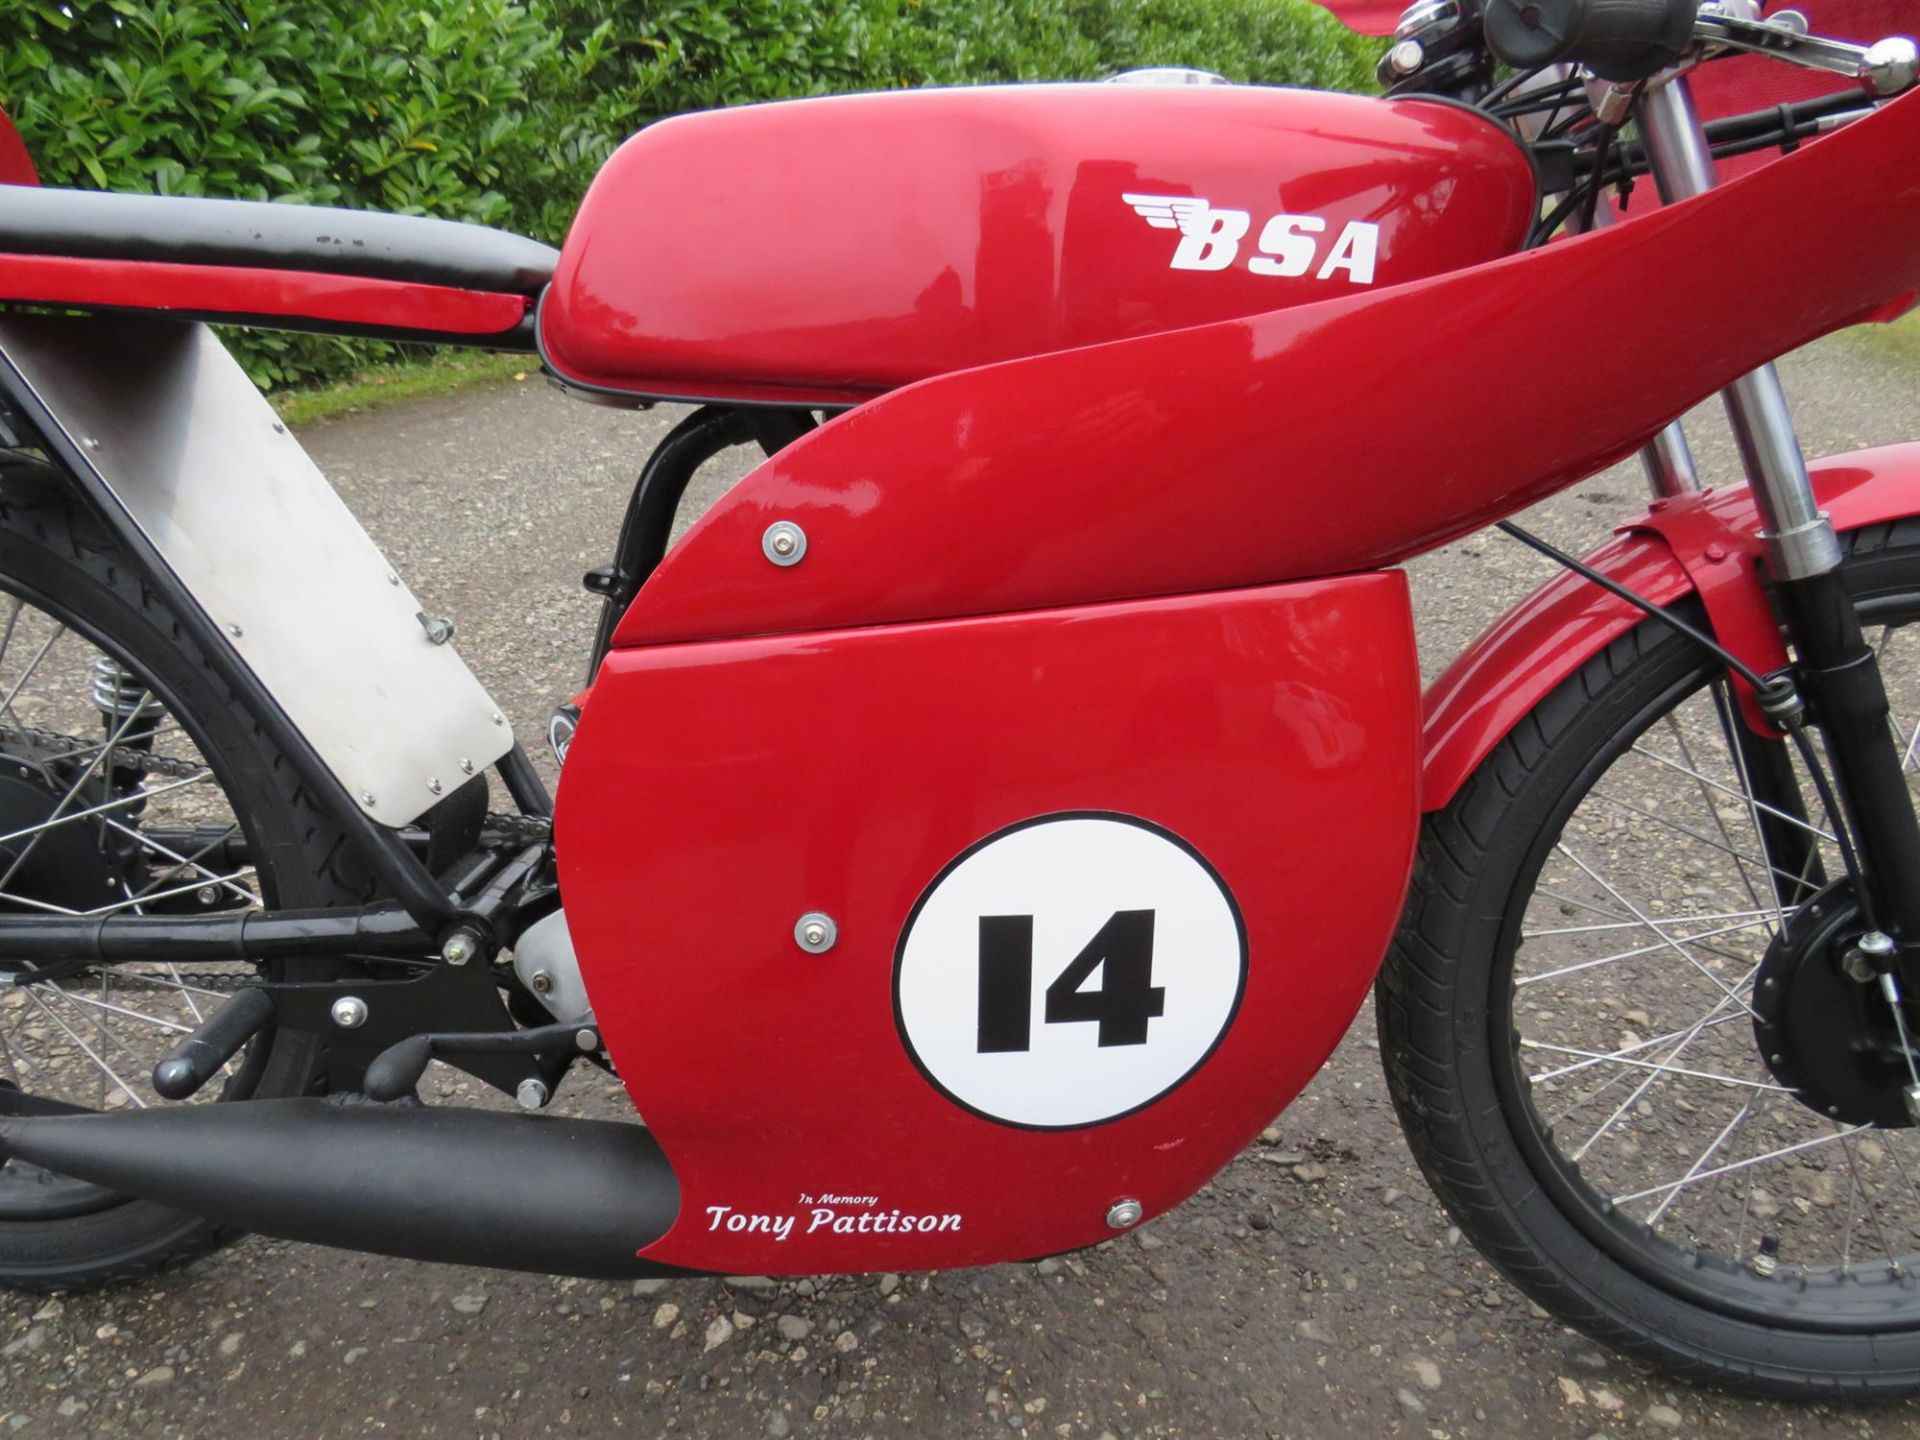 1963 BSA Bantam D7 Road Racer 175cc - Image 3 of 10